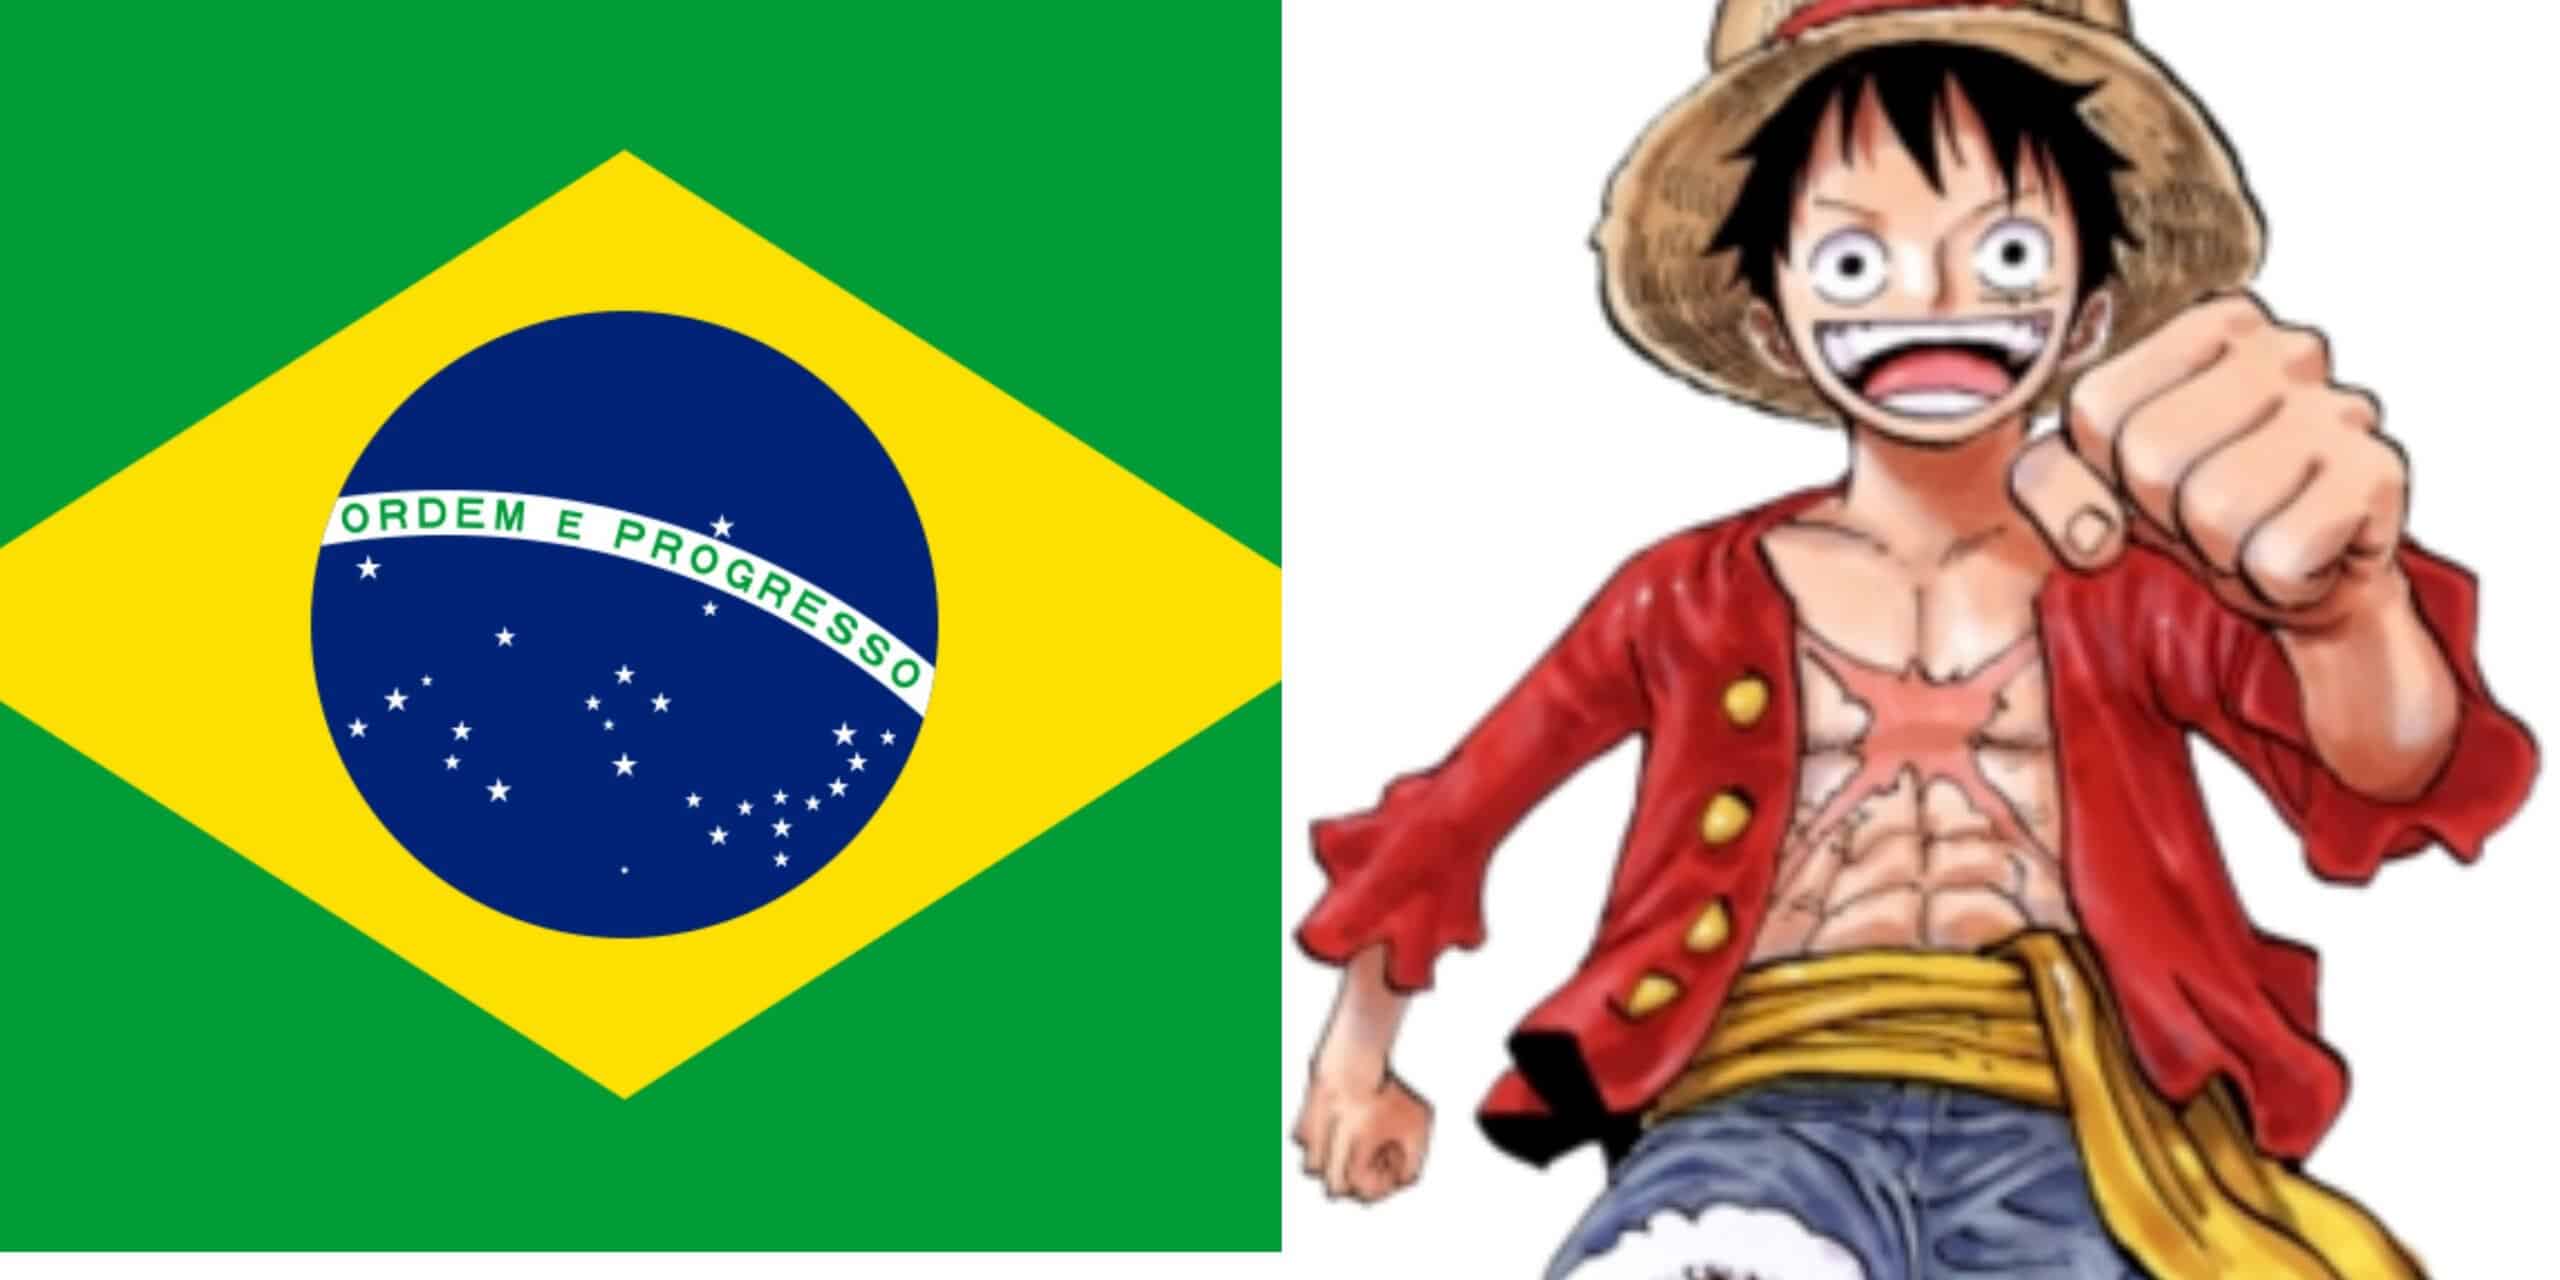 Luffy is Brazilian